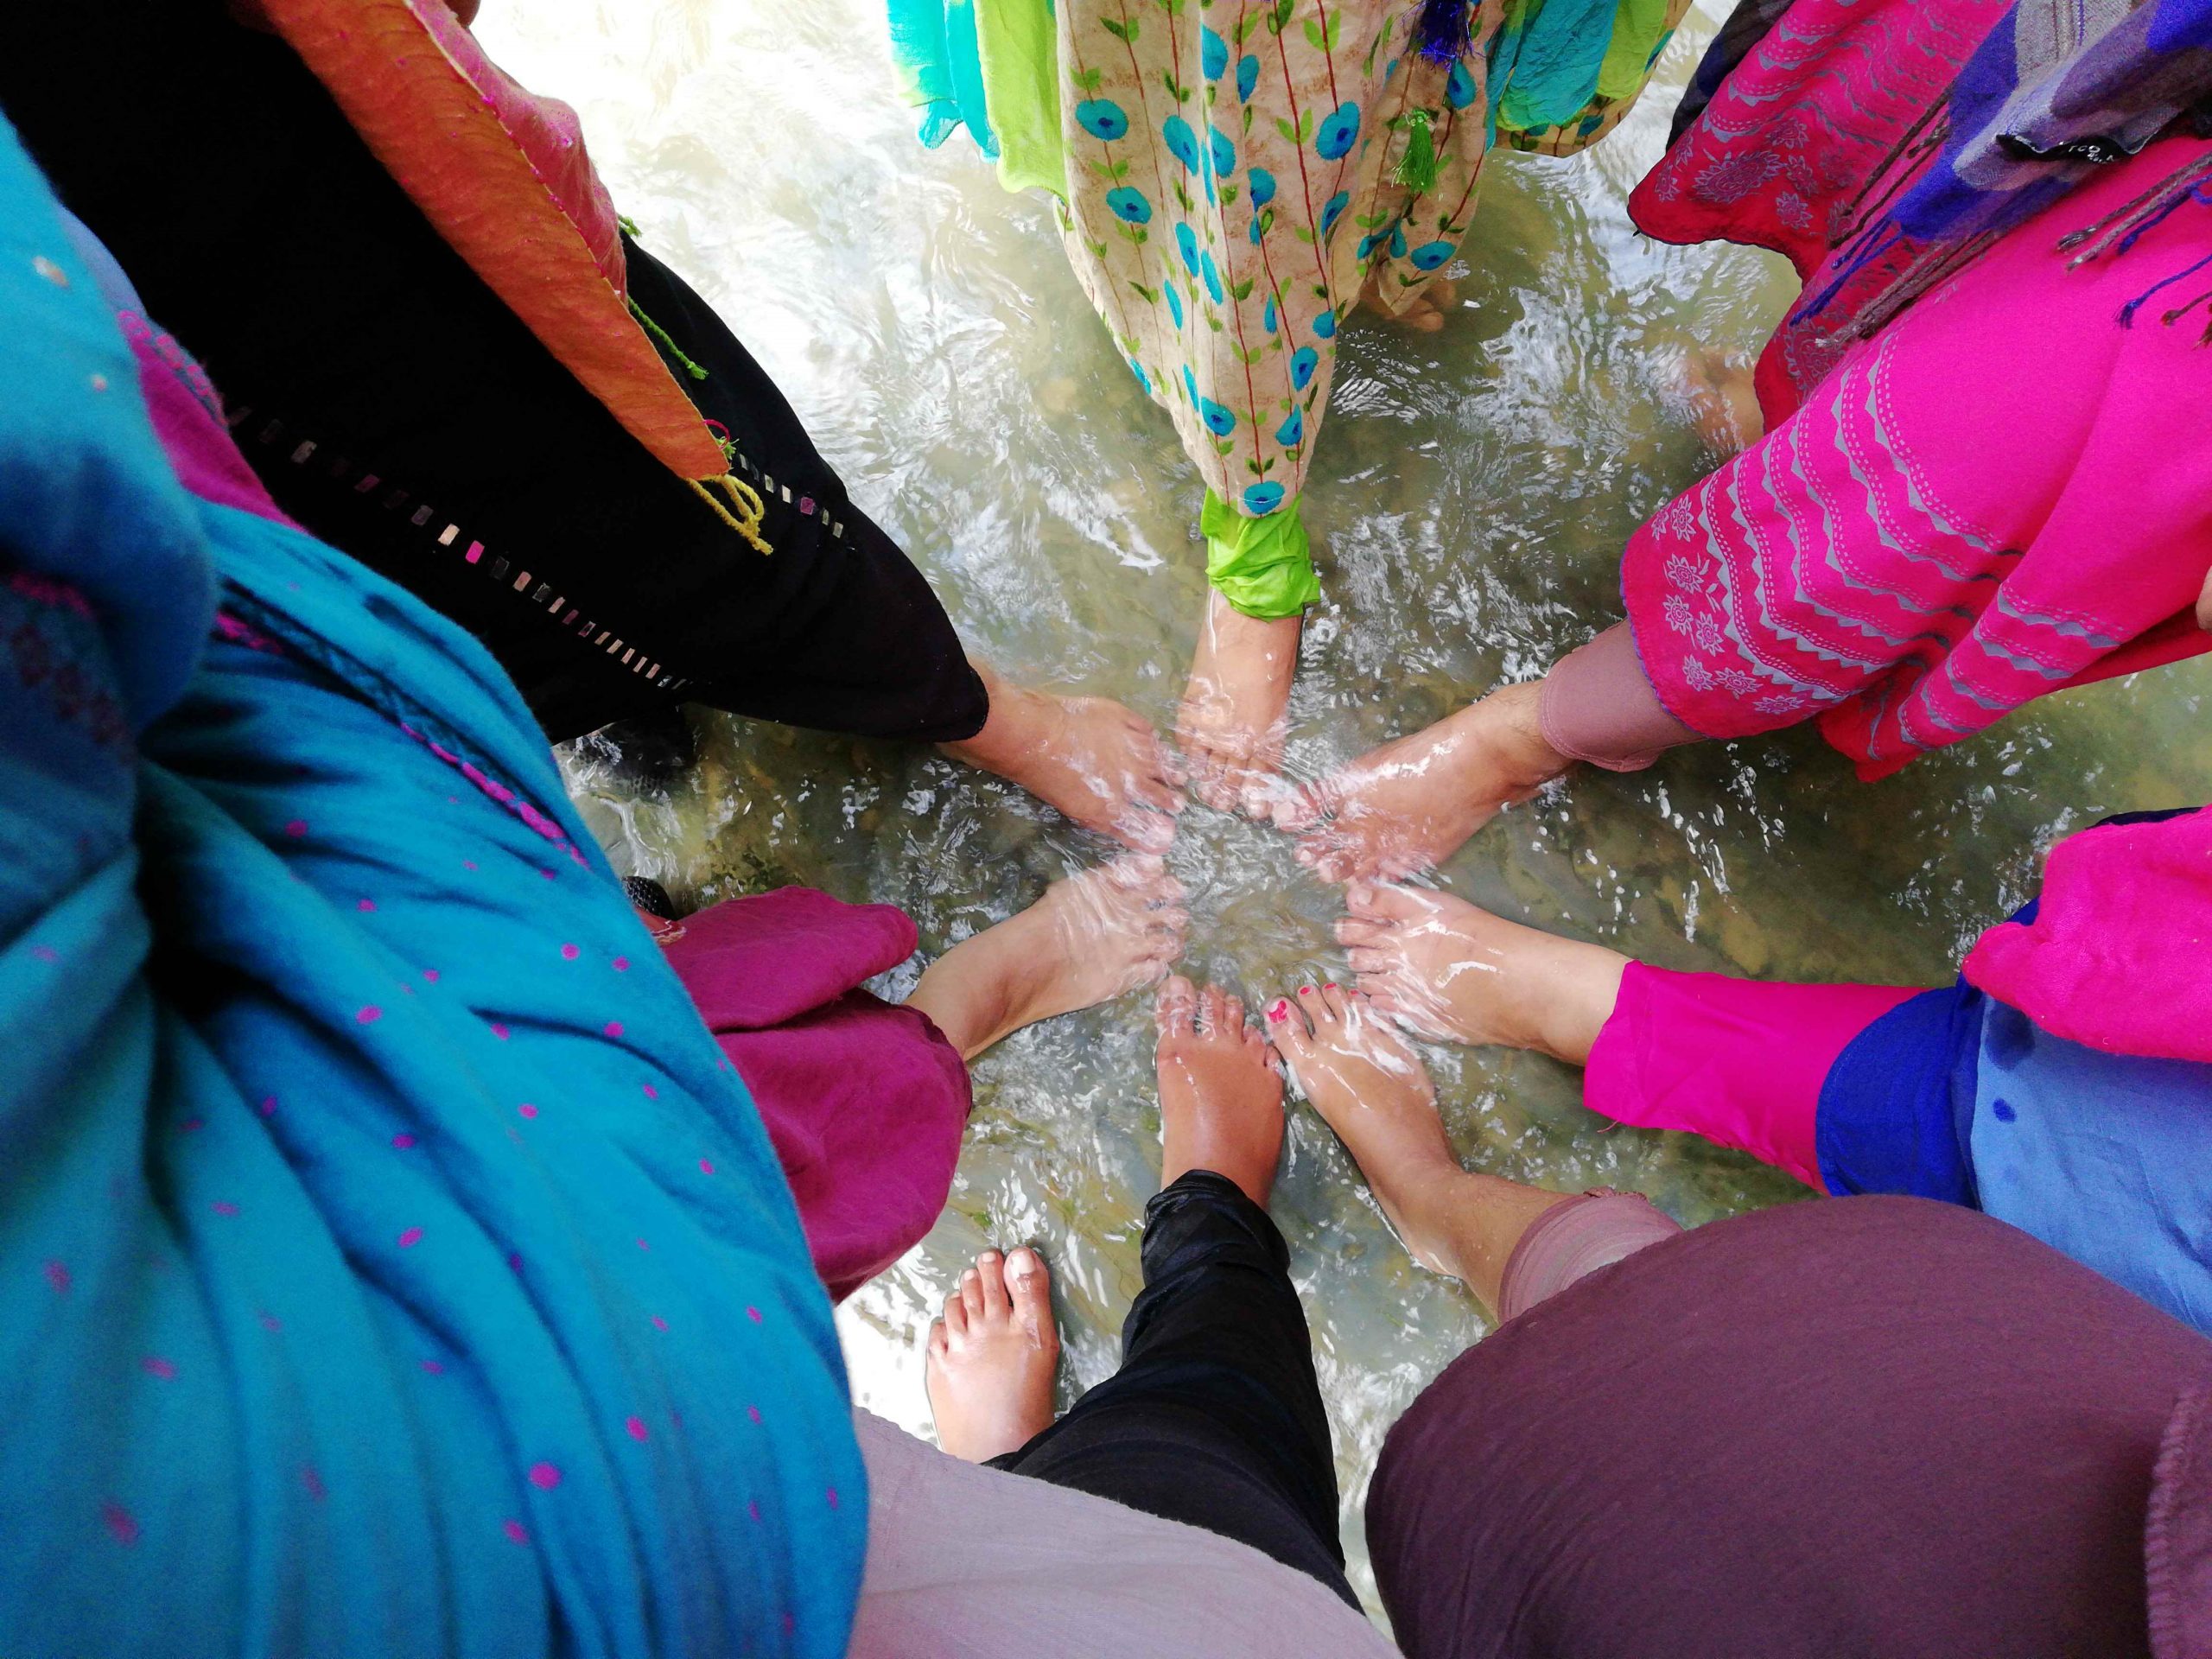 A group of girls enjoying Risang Waterfall